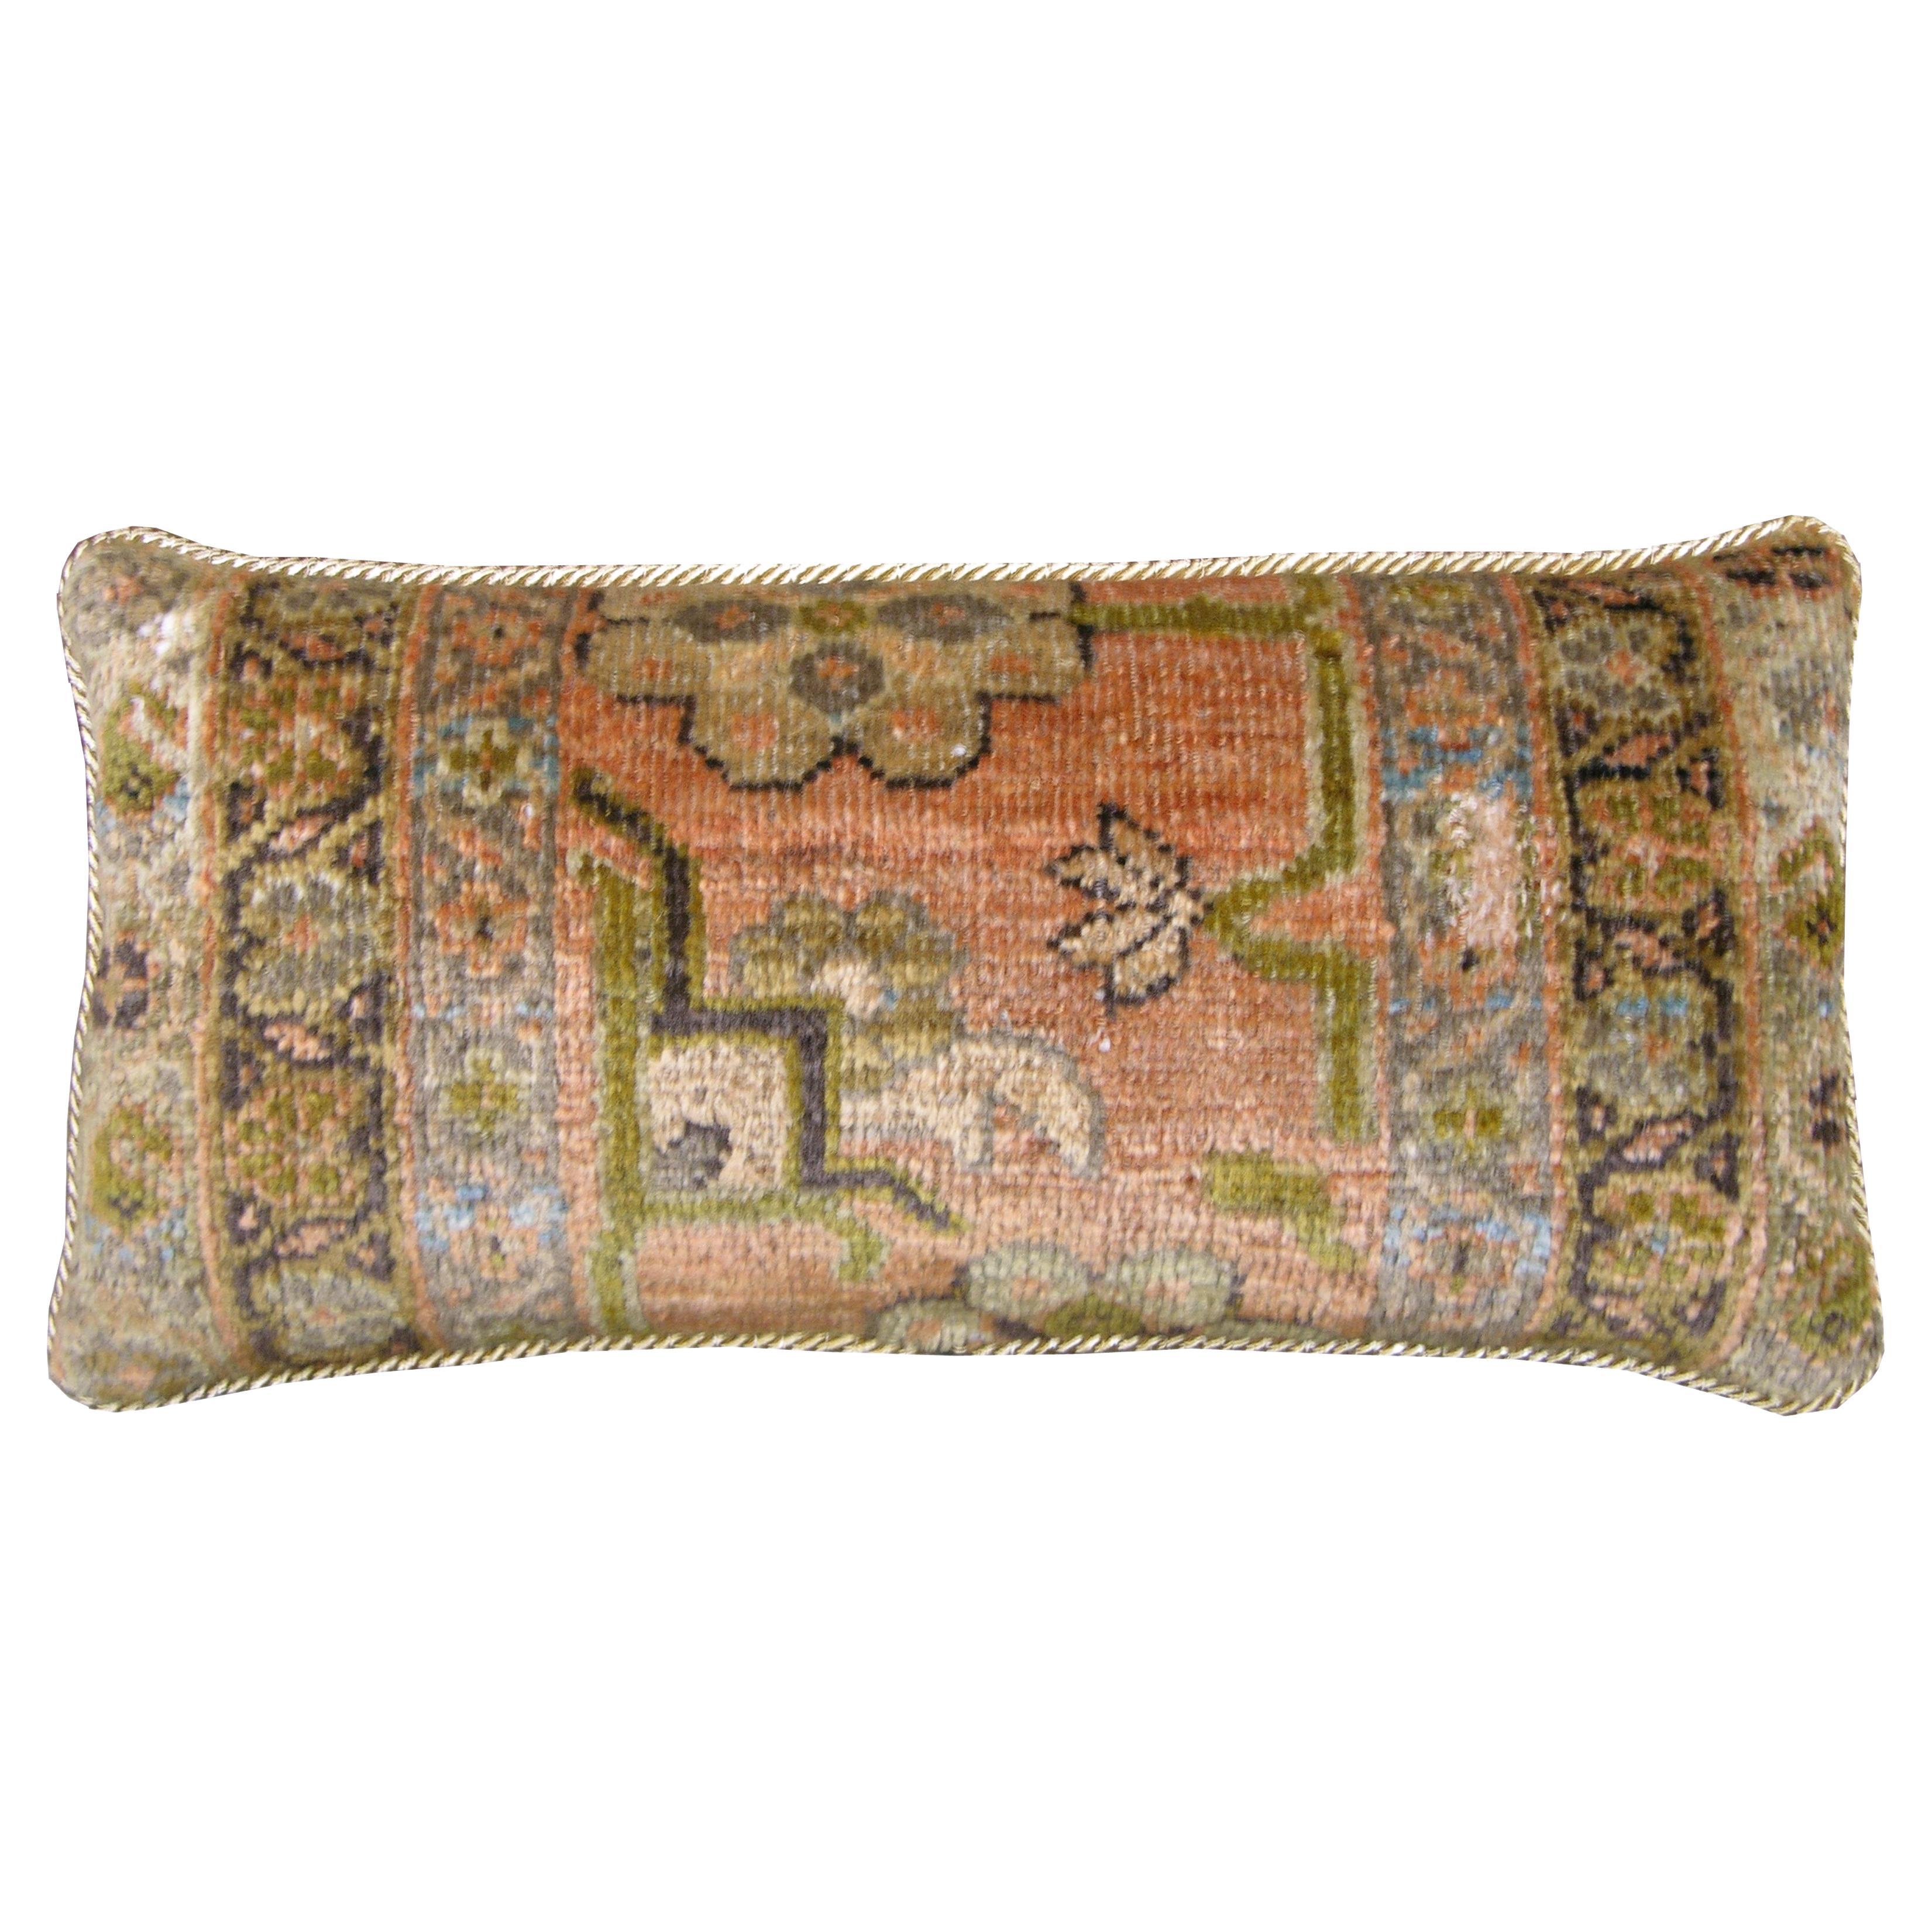 Circa 1880 Antique Ziegler Pillow